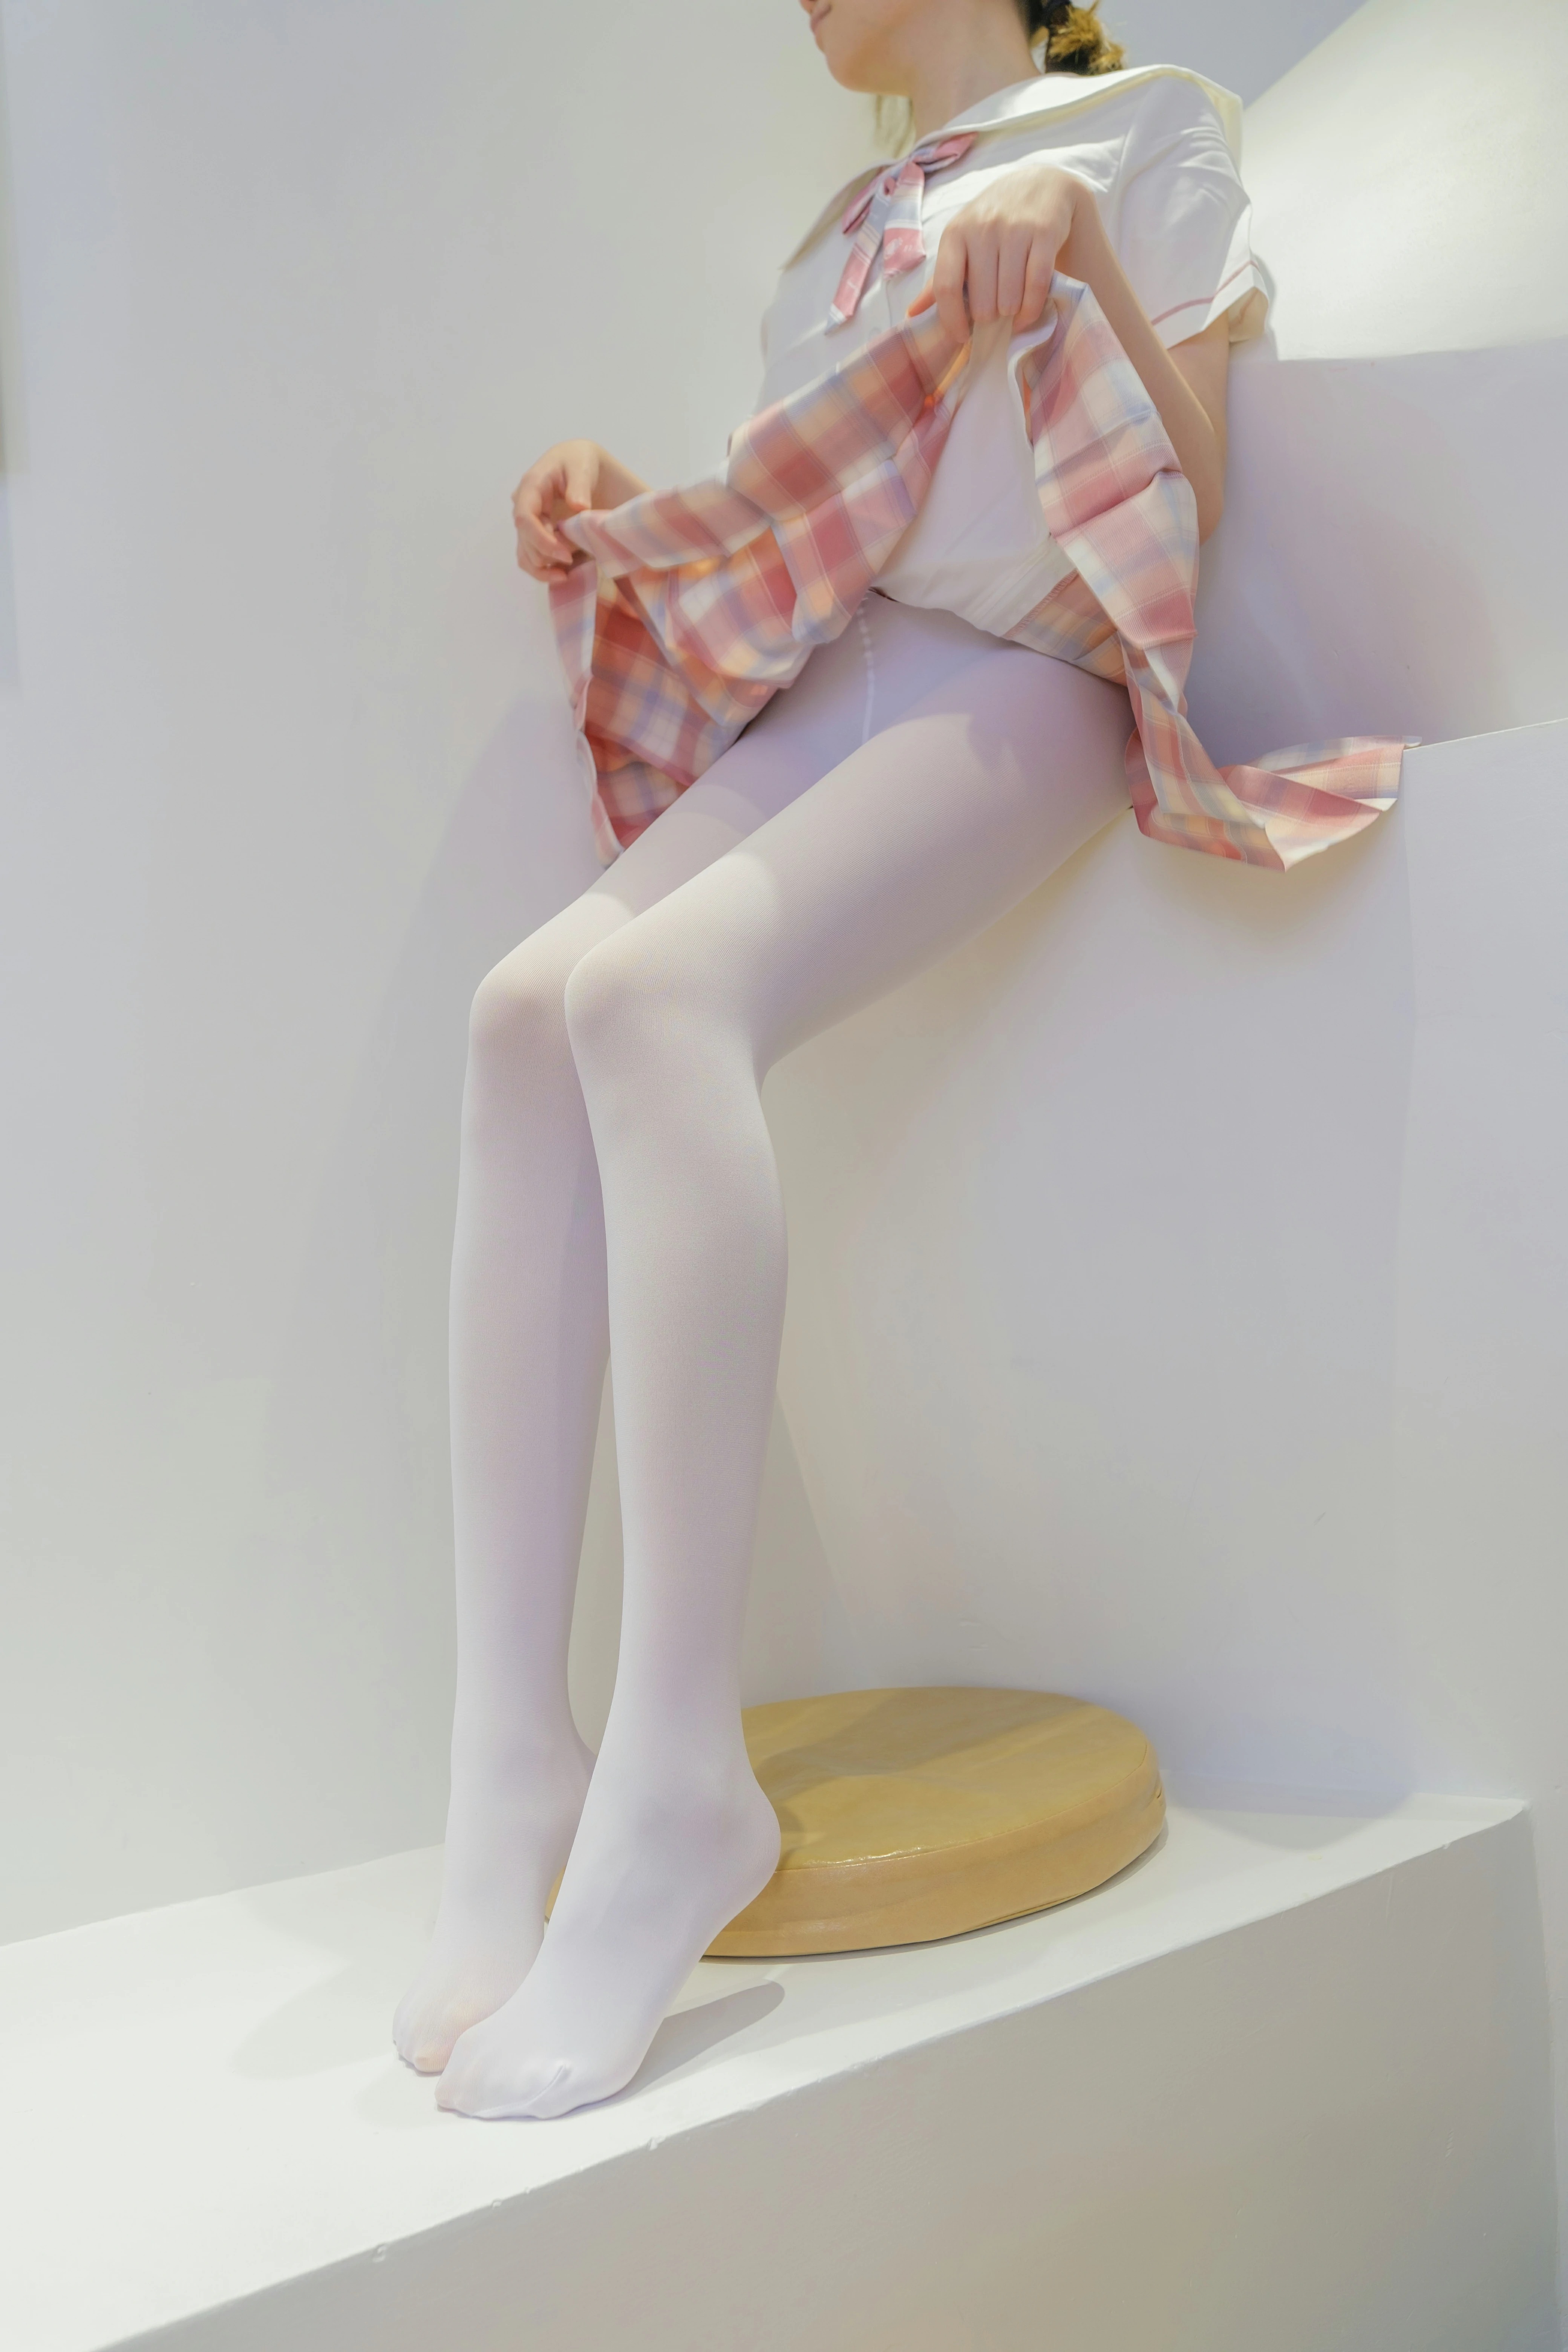 [森萝财团]GZAY3 酒店JK制服小萝莉 白色衬衫与粉色短裙加白色丝袜美腿性感私房写真集,0012